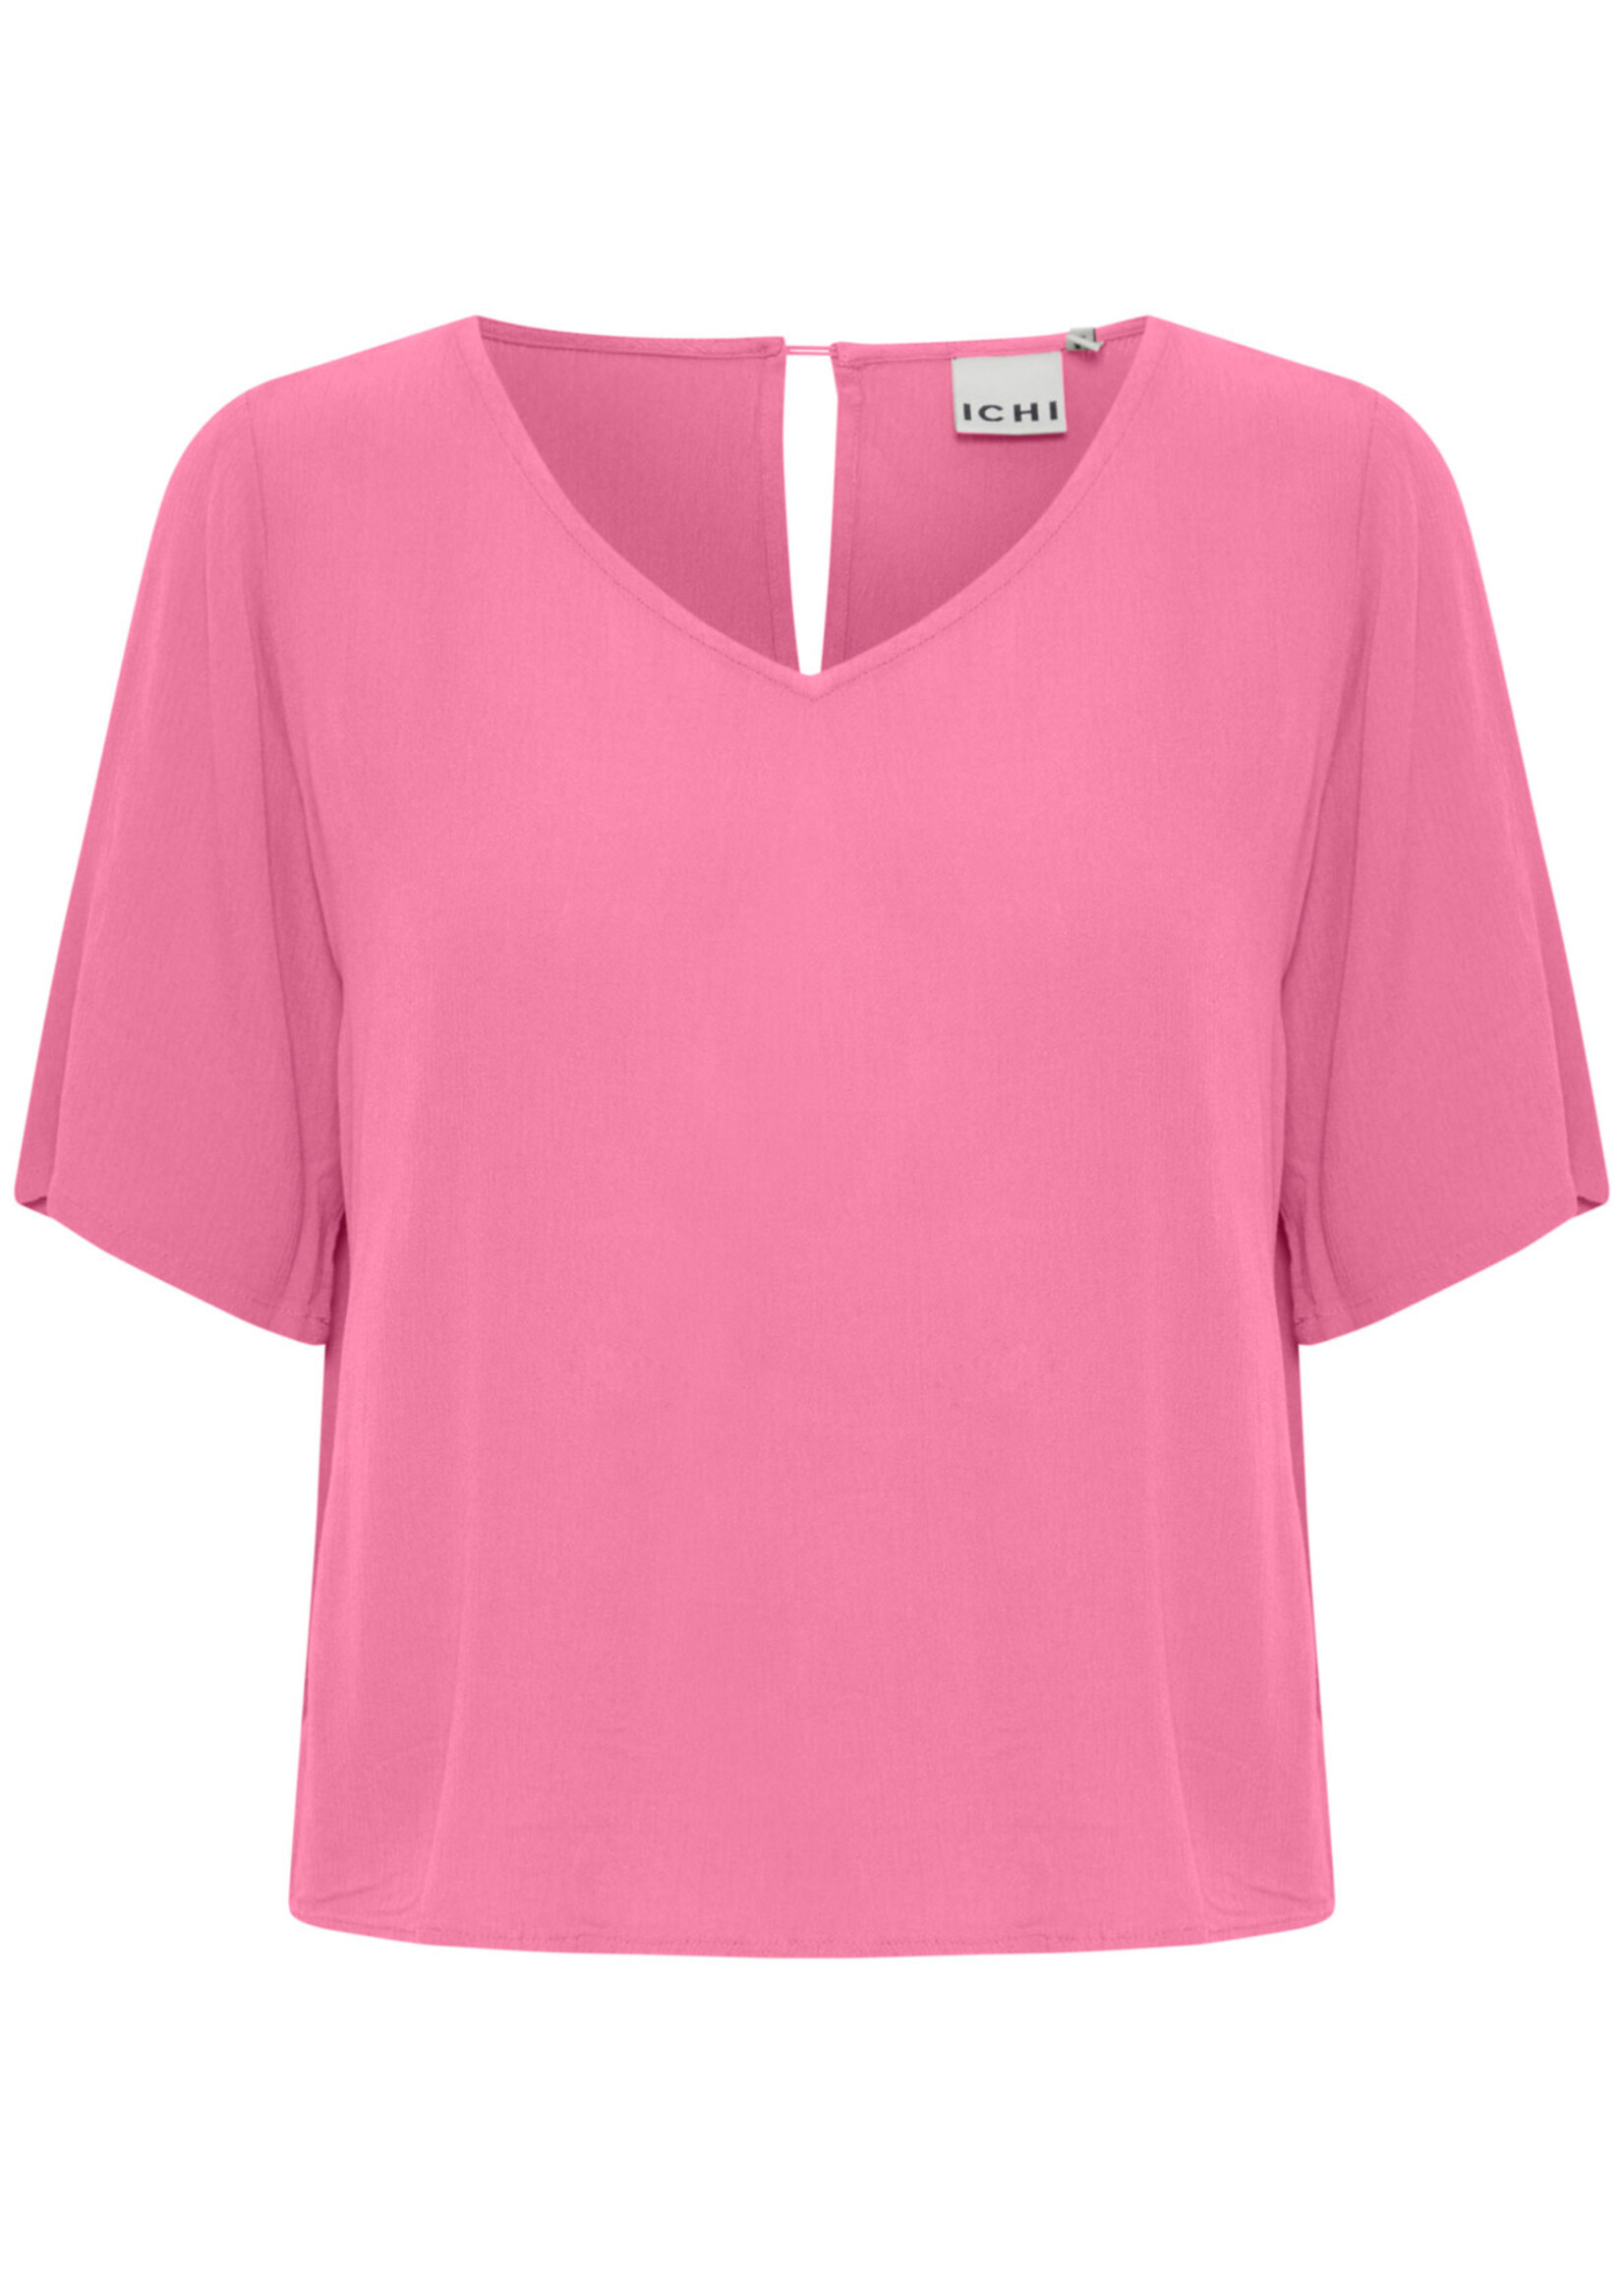 ICHI Marrakech shirt 9 - Super pink